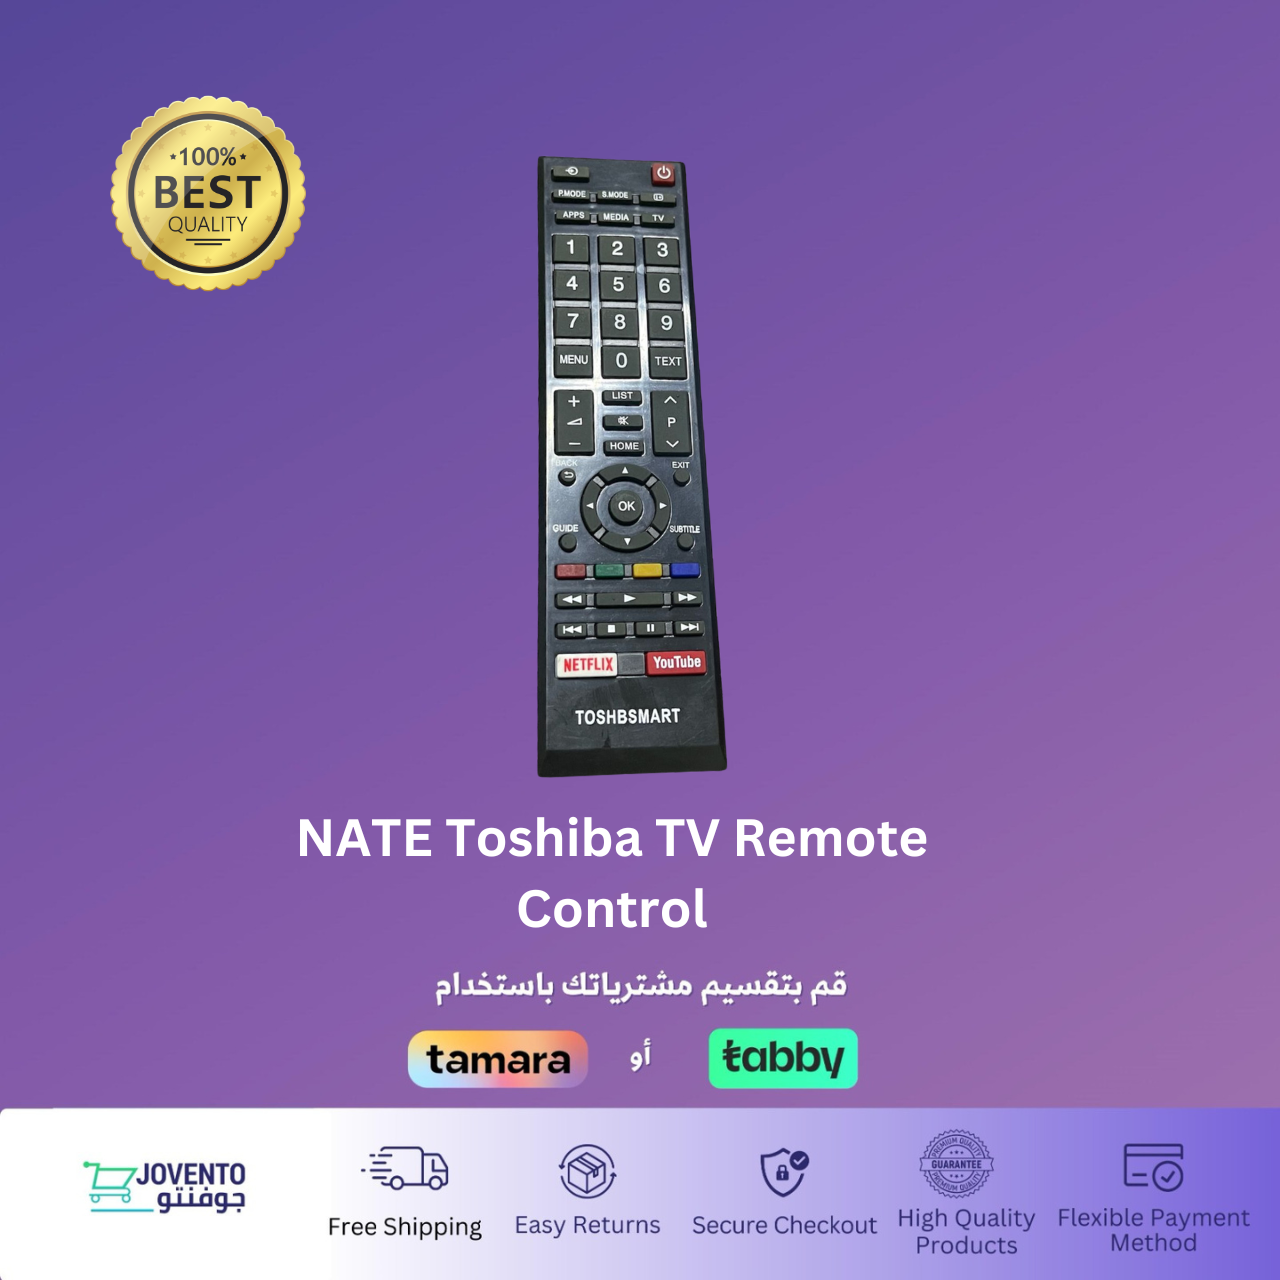 NATE Toshiba TV Remote Control